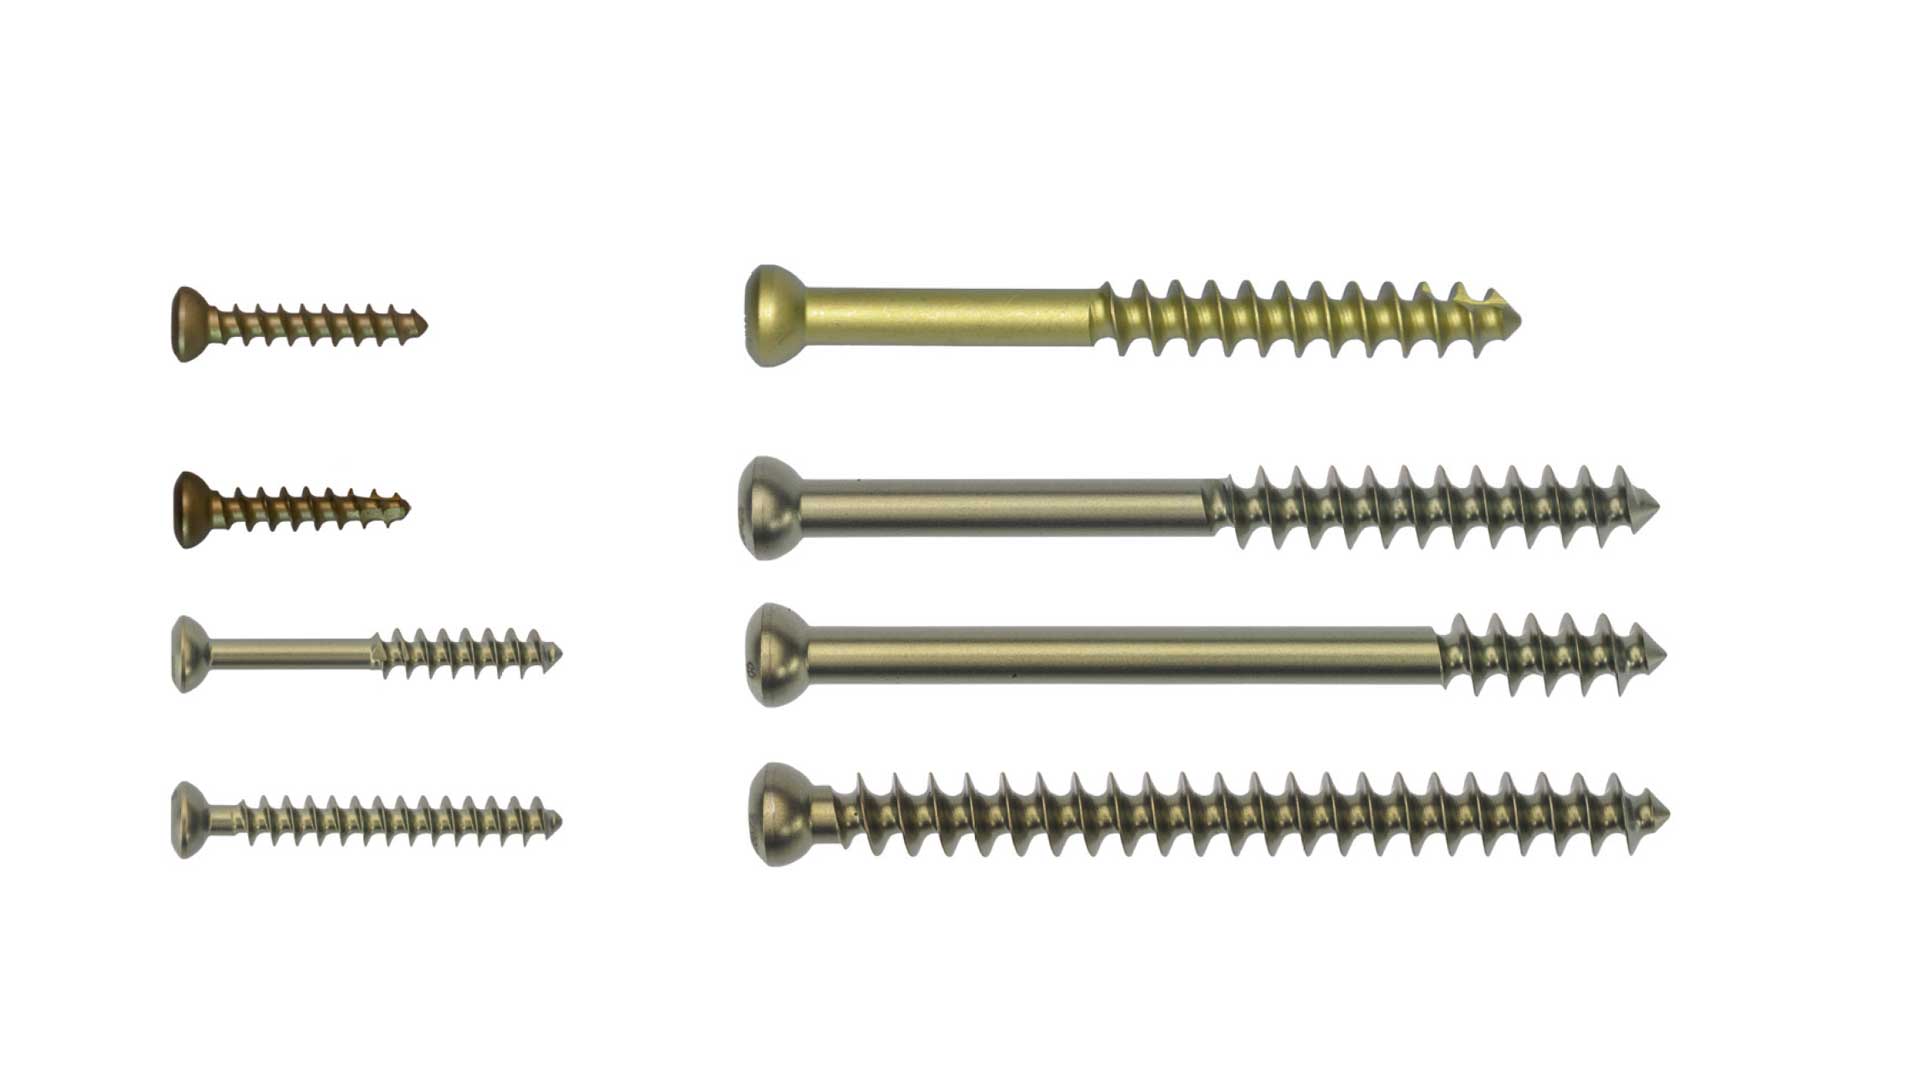 Königsee Implantate Produkte: Spongiosaschrauben Standard, Stahl aus der Kategorie Schrauben